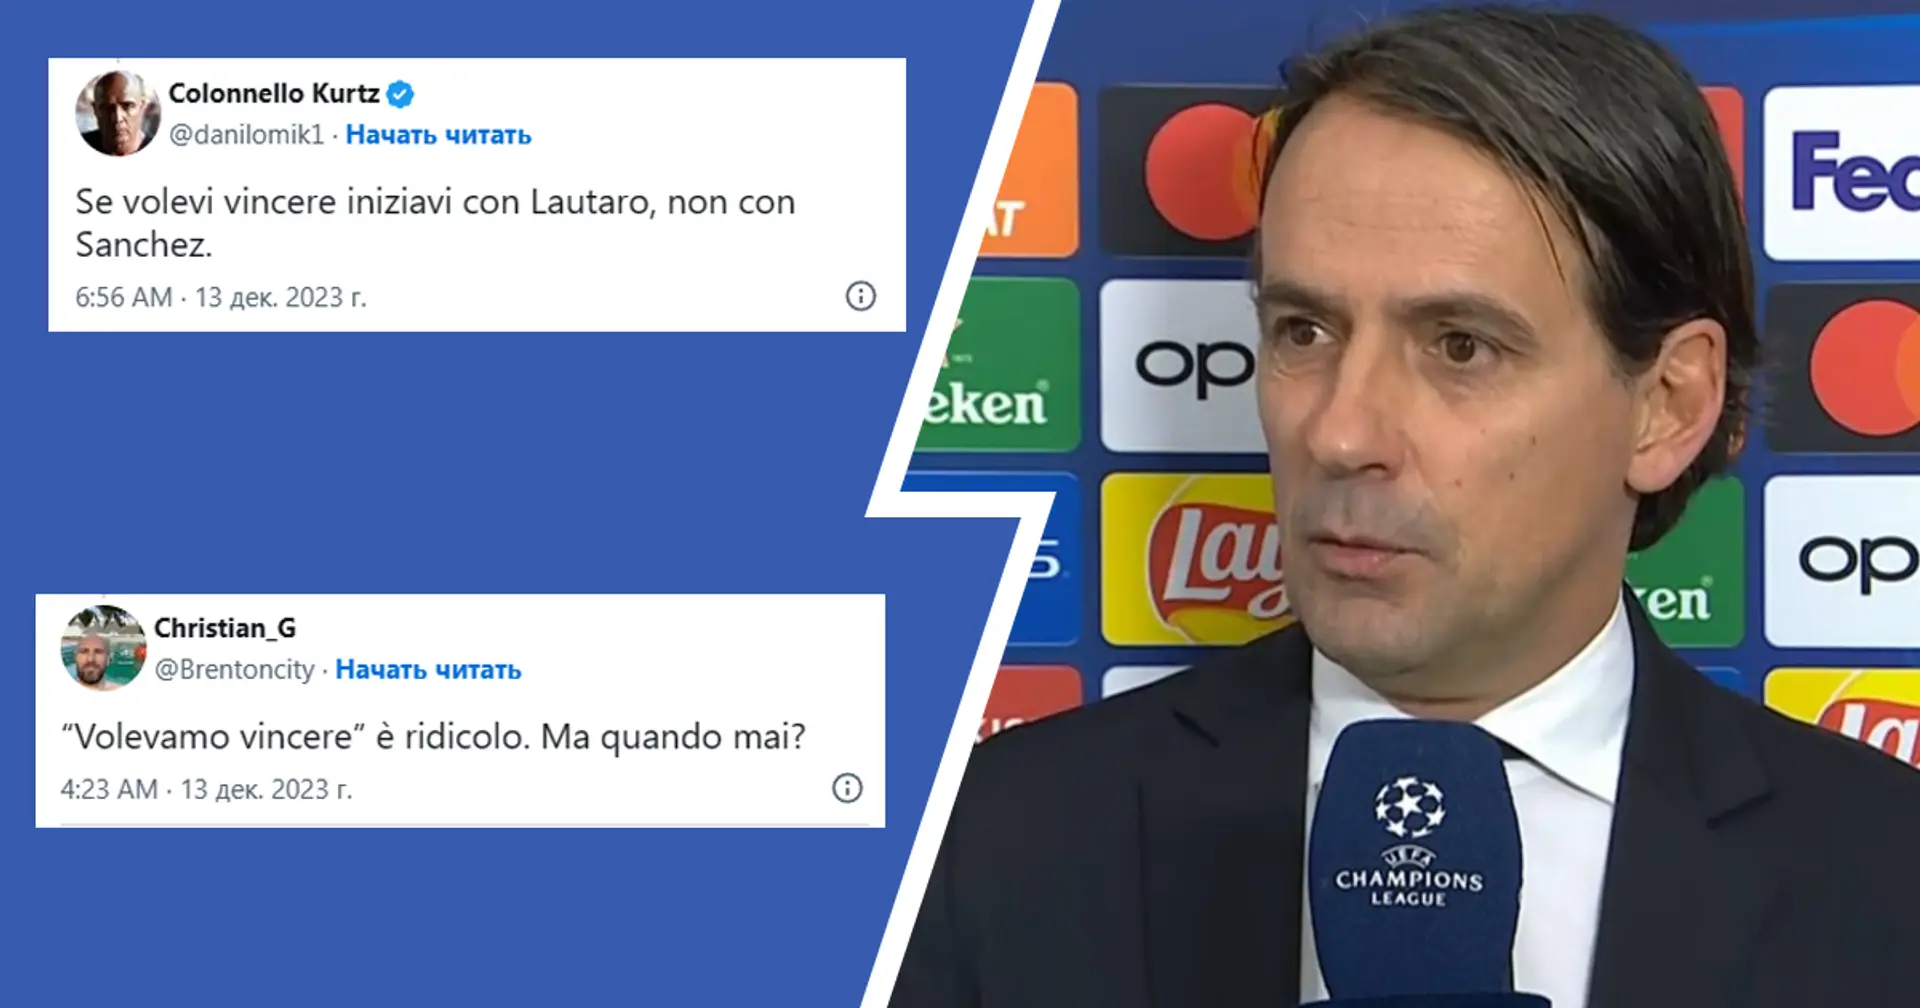 "Se volevi vincere iniziavi con Lautaro, non con Sanchez": Il web si scatena contro Inzaghi dopo il pareggio con la Sociedad